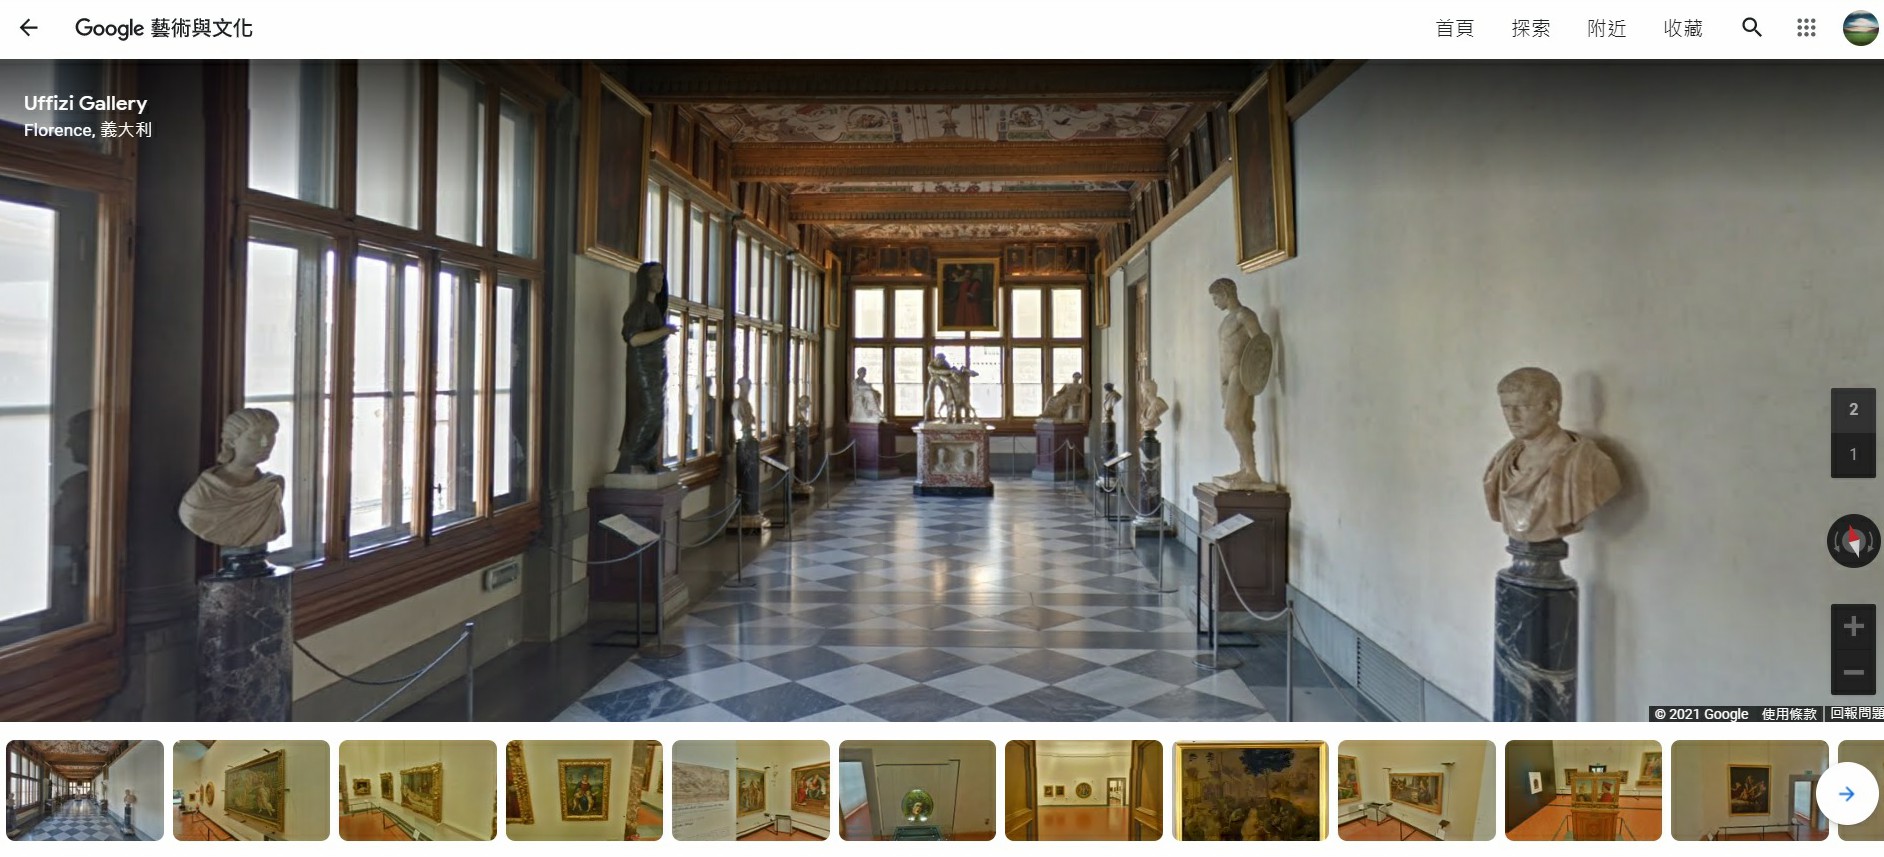 義大利佛羅倫斯烏菲茲美術館,烏菲茲美術館,Google Arts & Culture,Google 藝術與文化,虛擬實境美術館,線上展覽,線上美術館